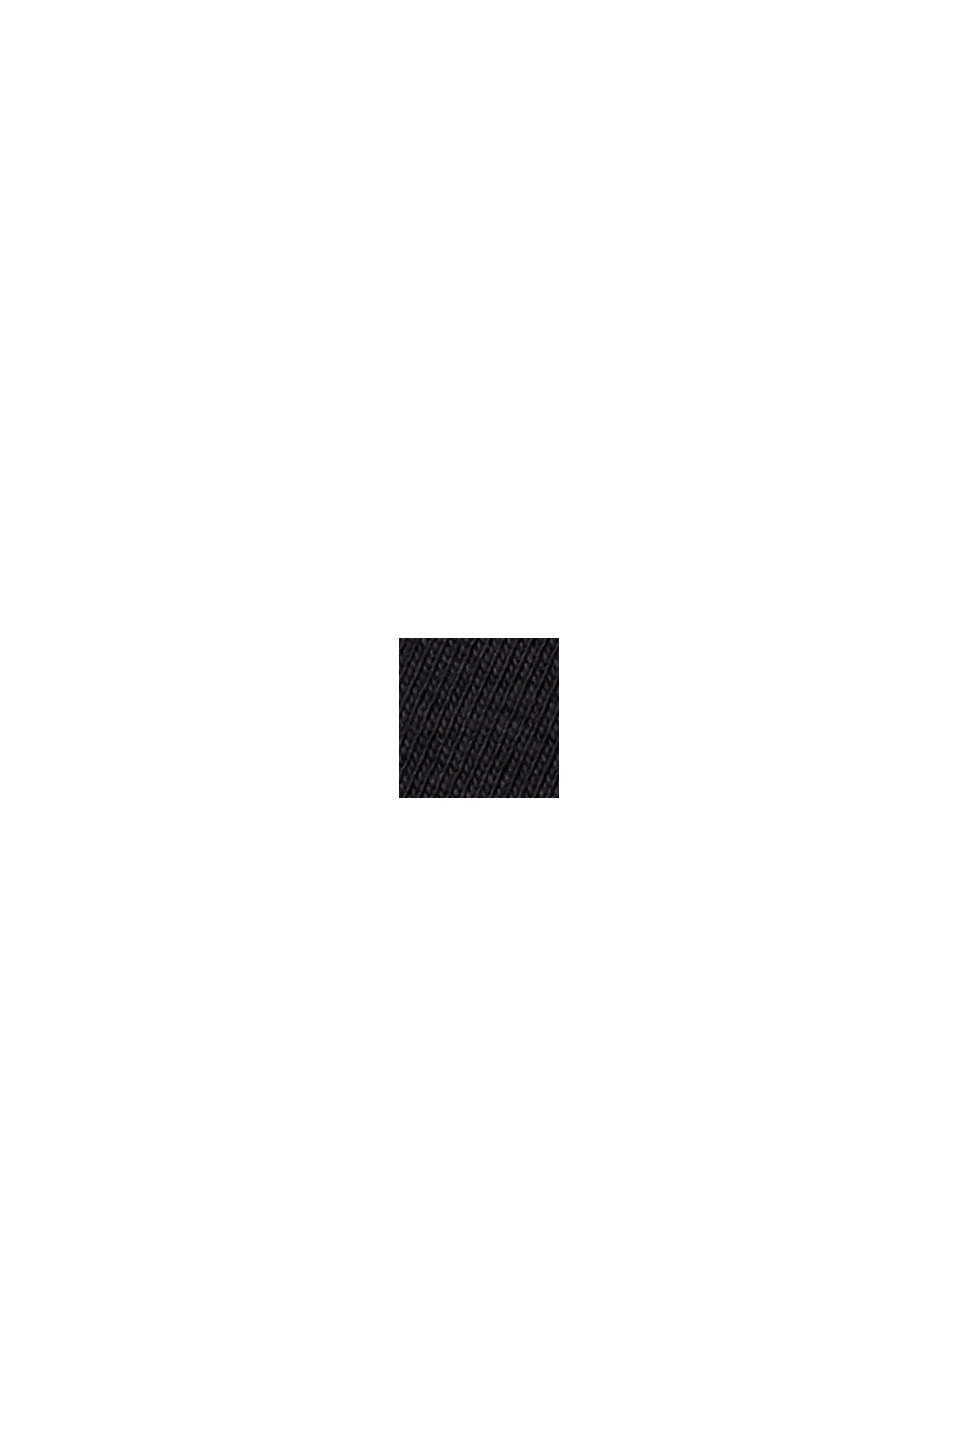 Jersey-Ripp-Shirt aus 100% Baumwolle, BLACK, swatch